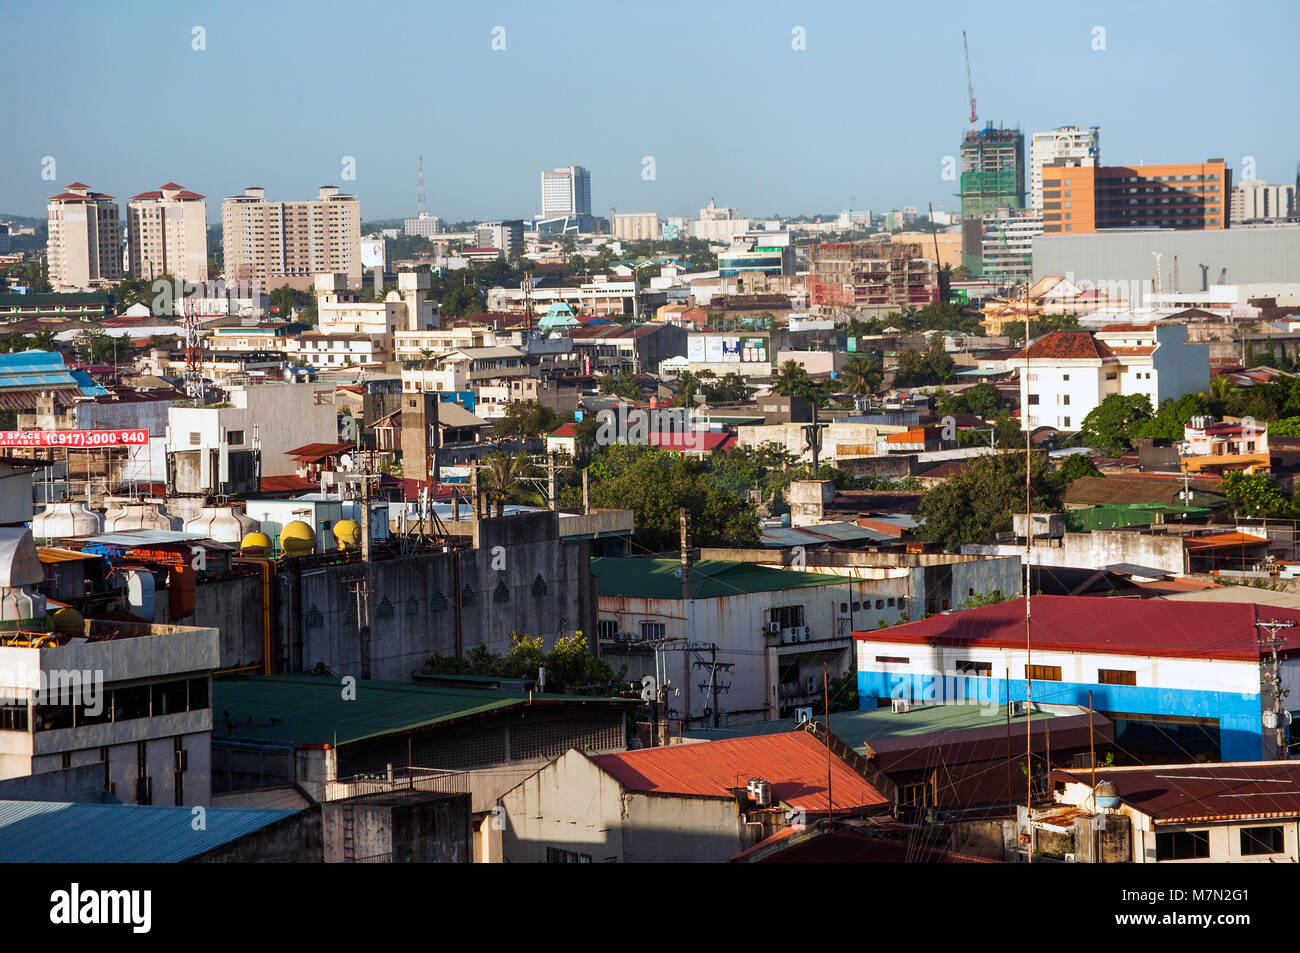 Vista aérea de la ciudad de Cebu, mirando al noreste, Filipinas Foto de stock